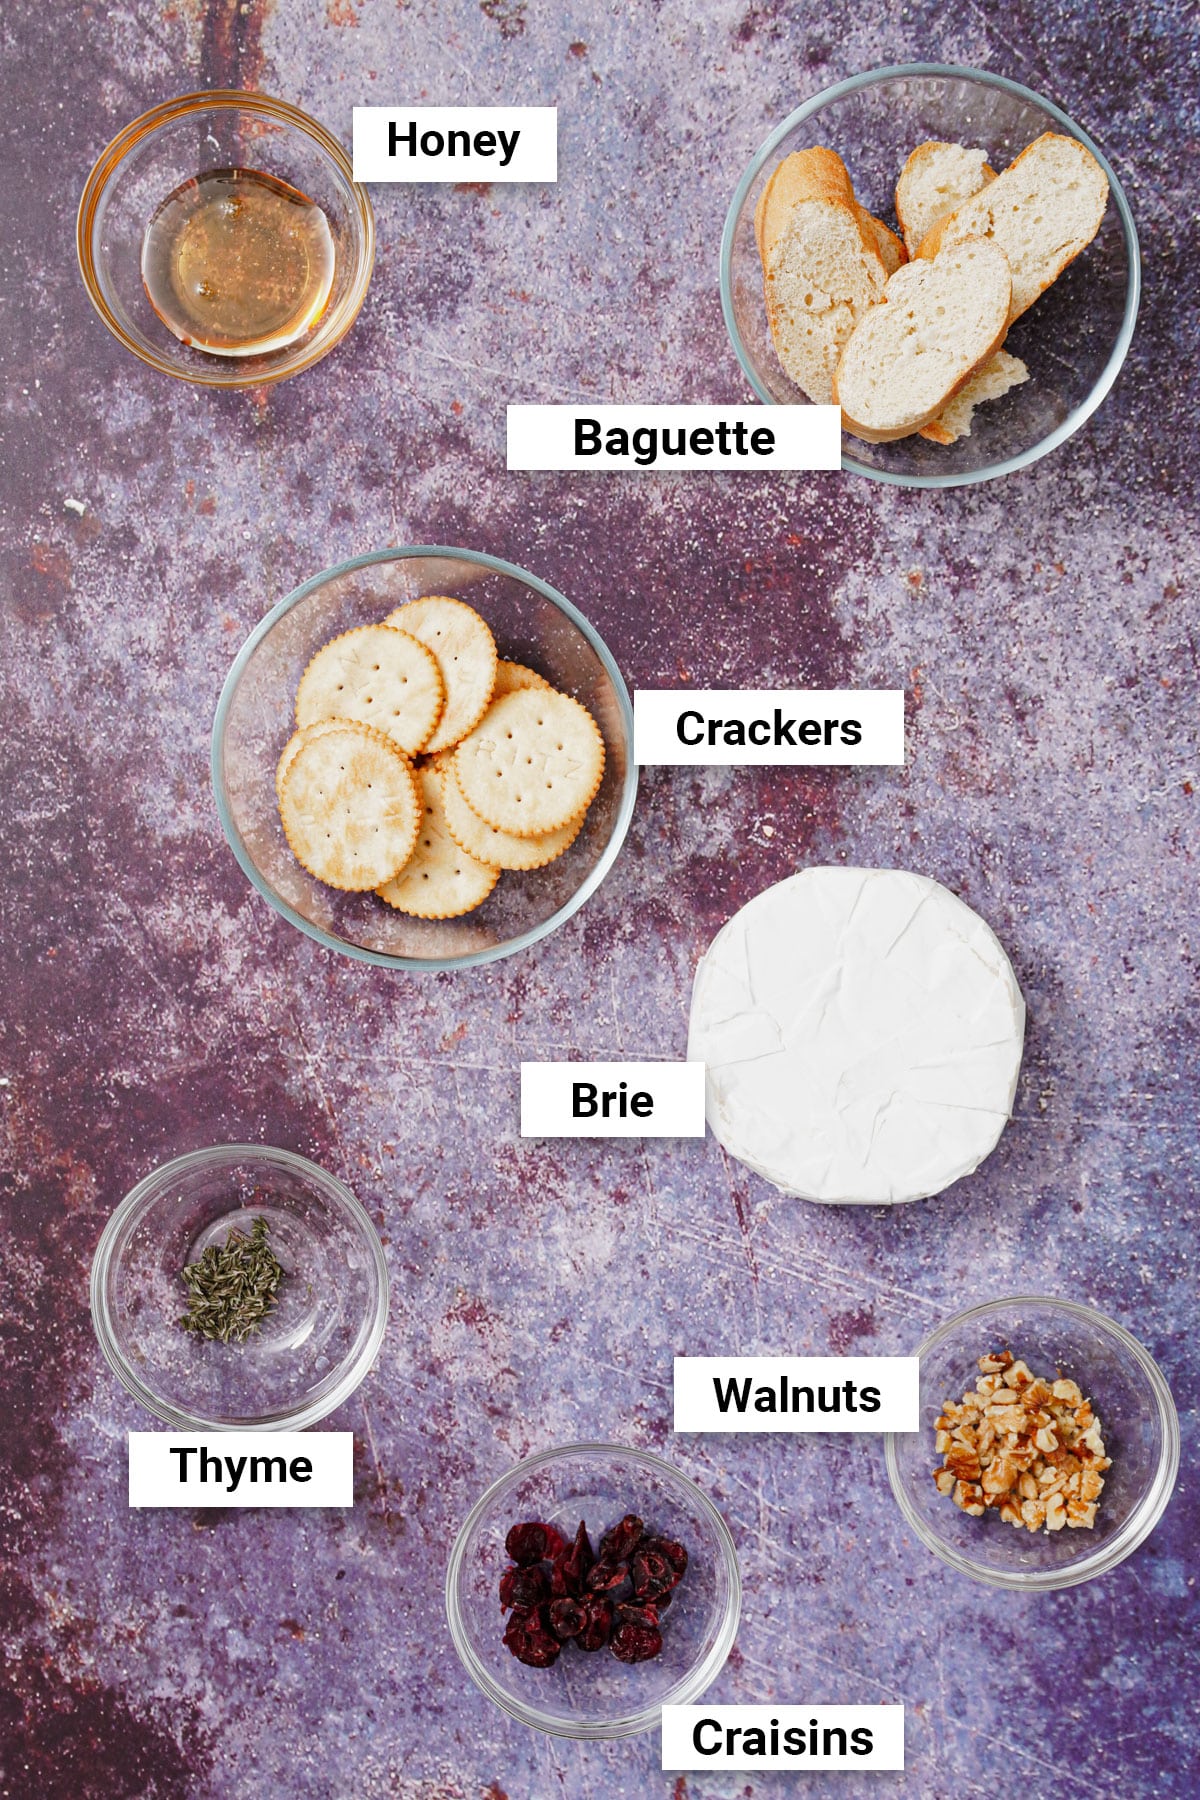 Ingredients for Air Fryer Brie recipe